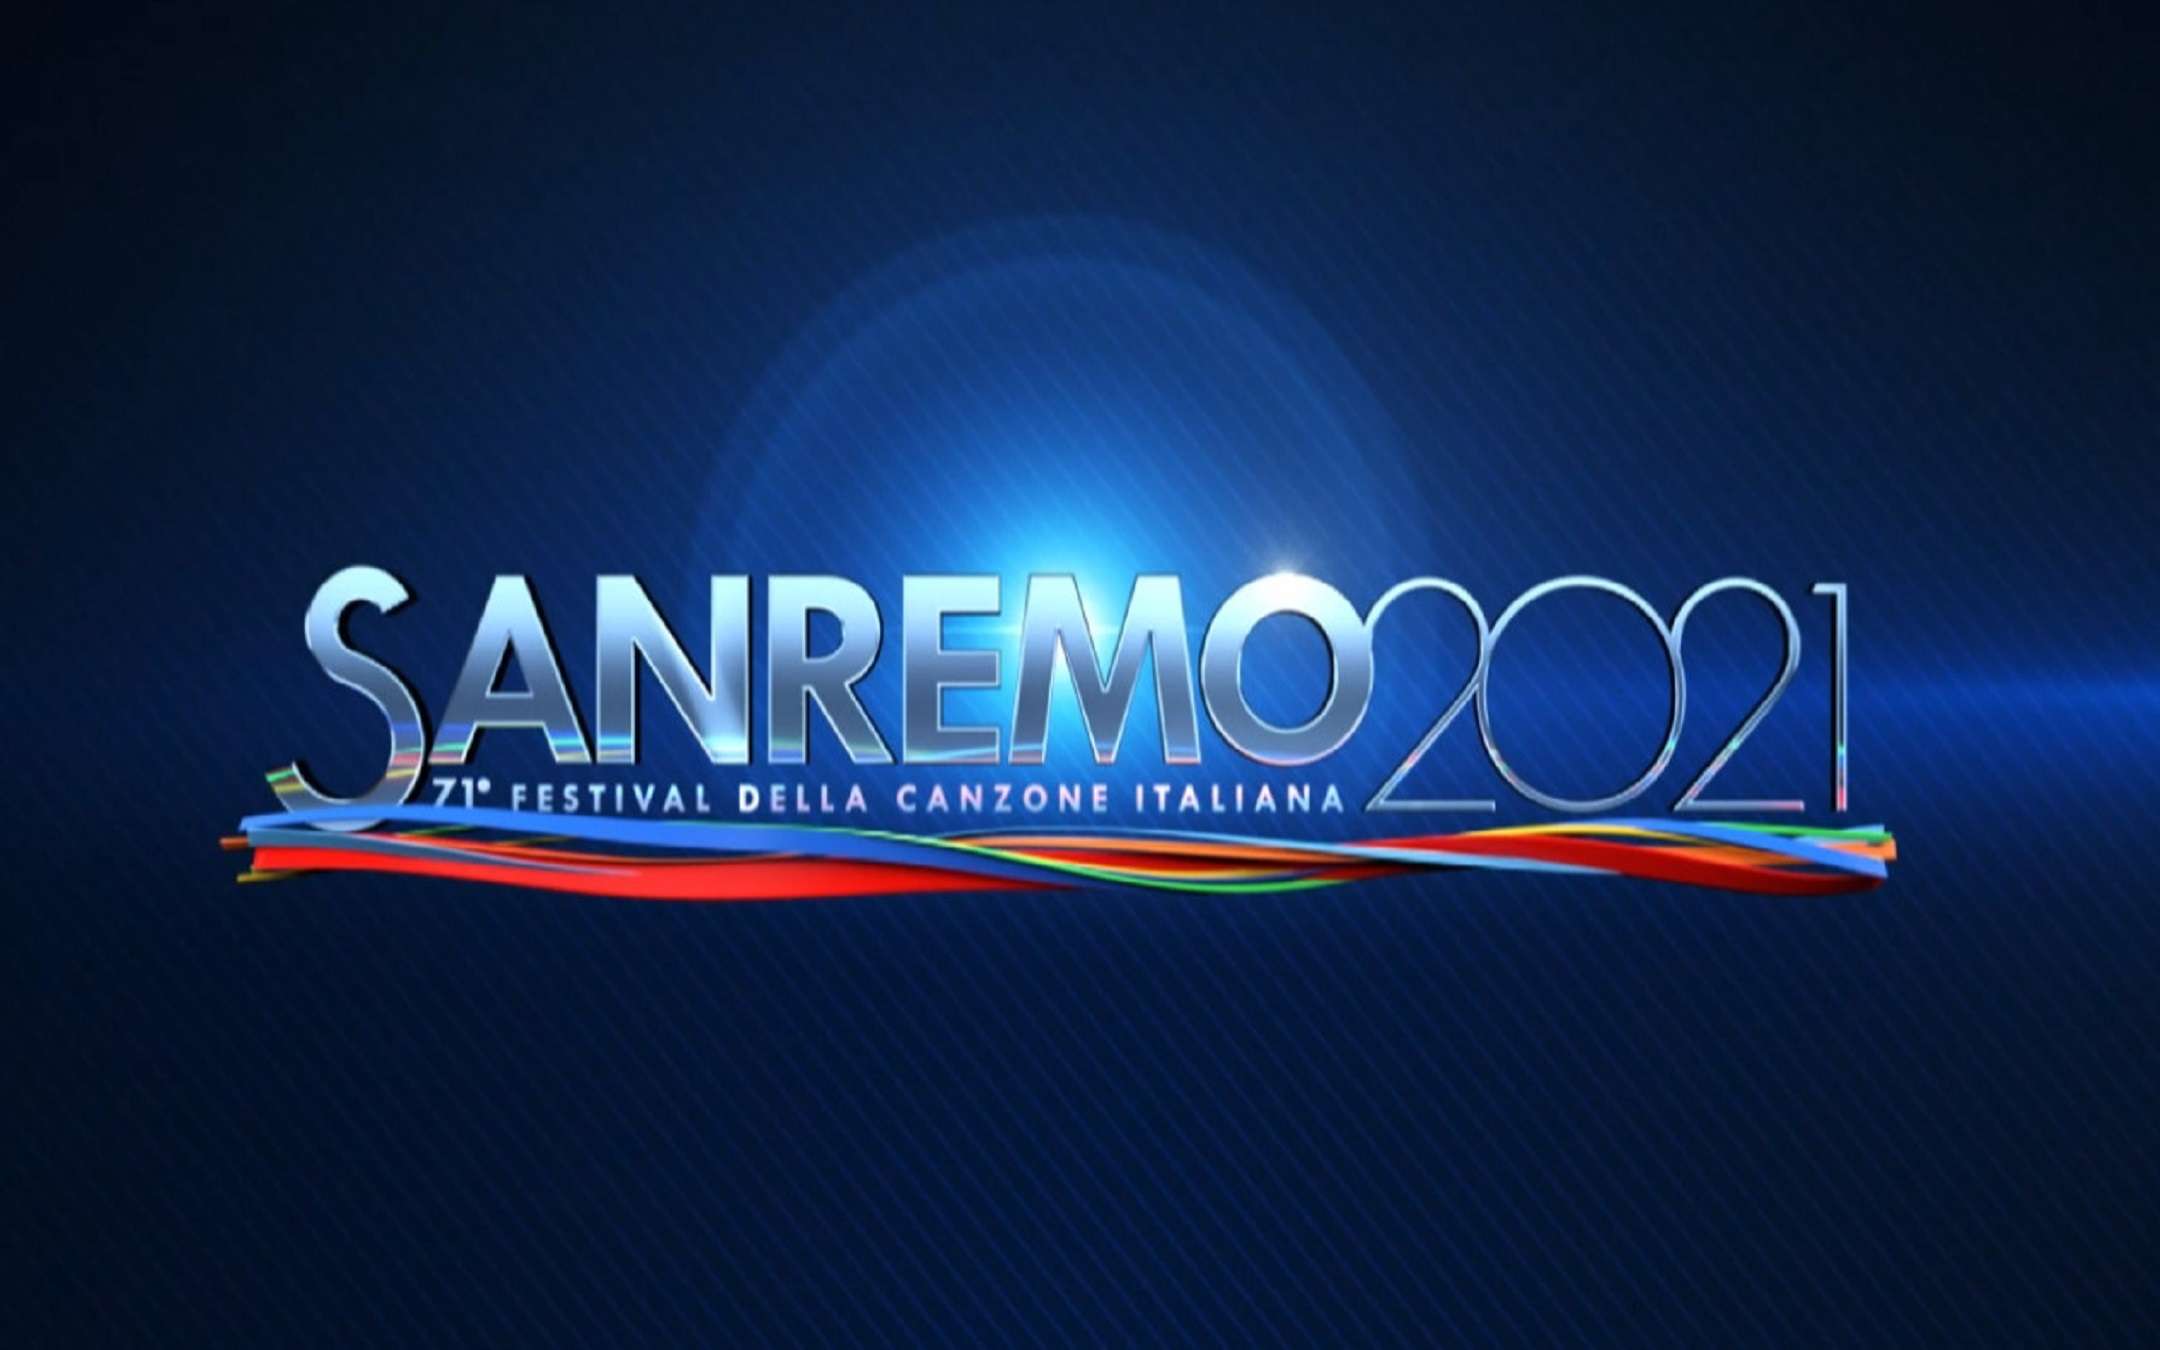 Festival di Sanremo 2021: come guardarlo in streaming?